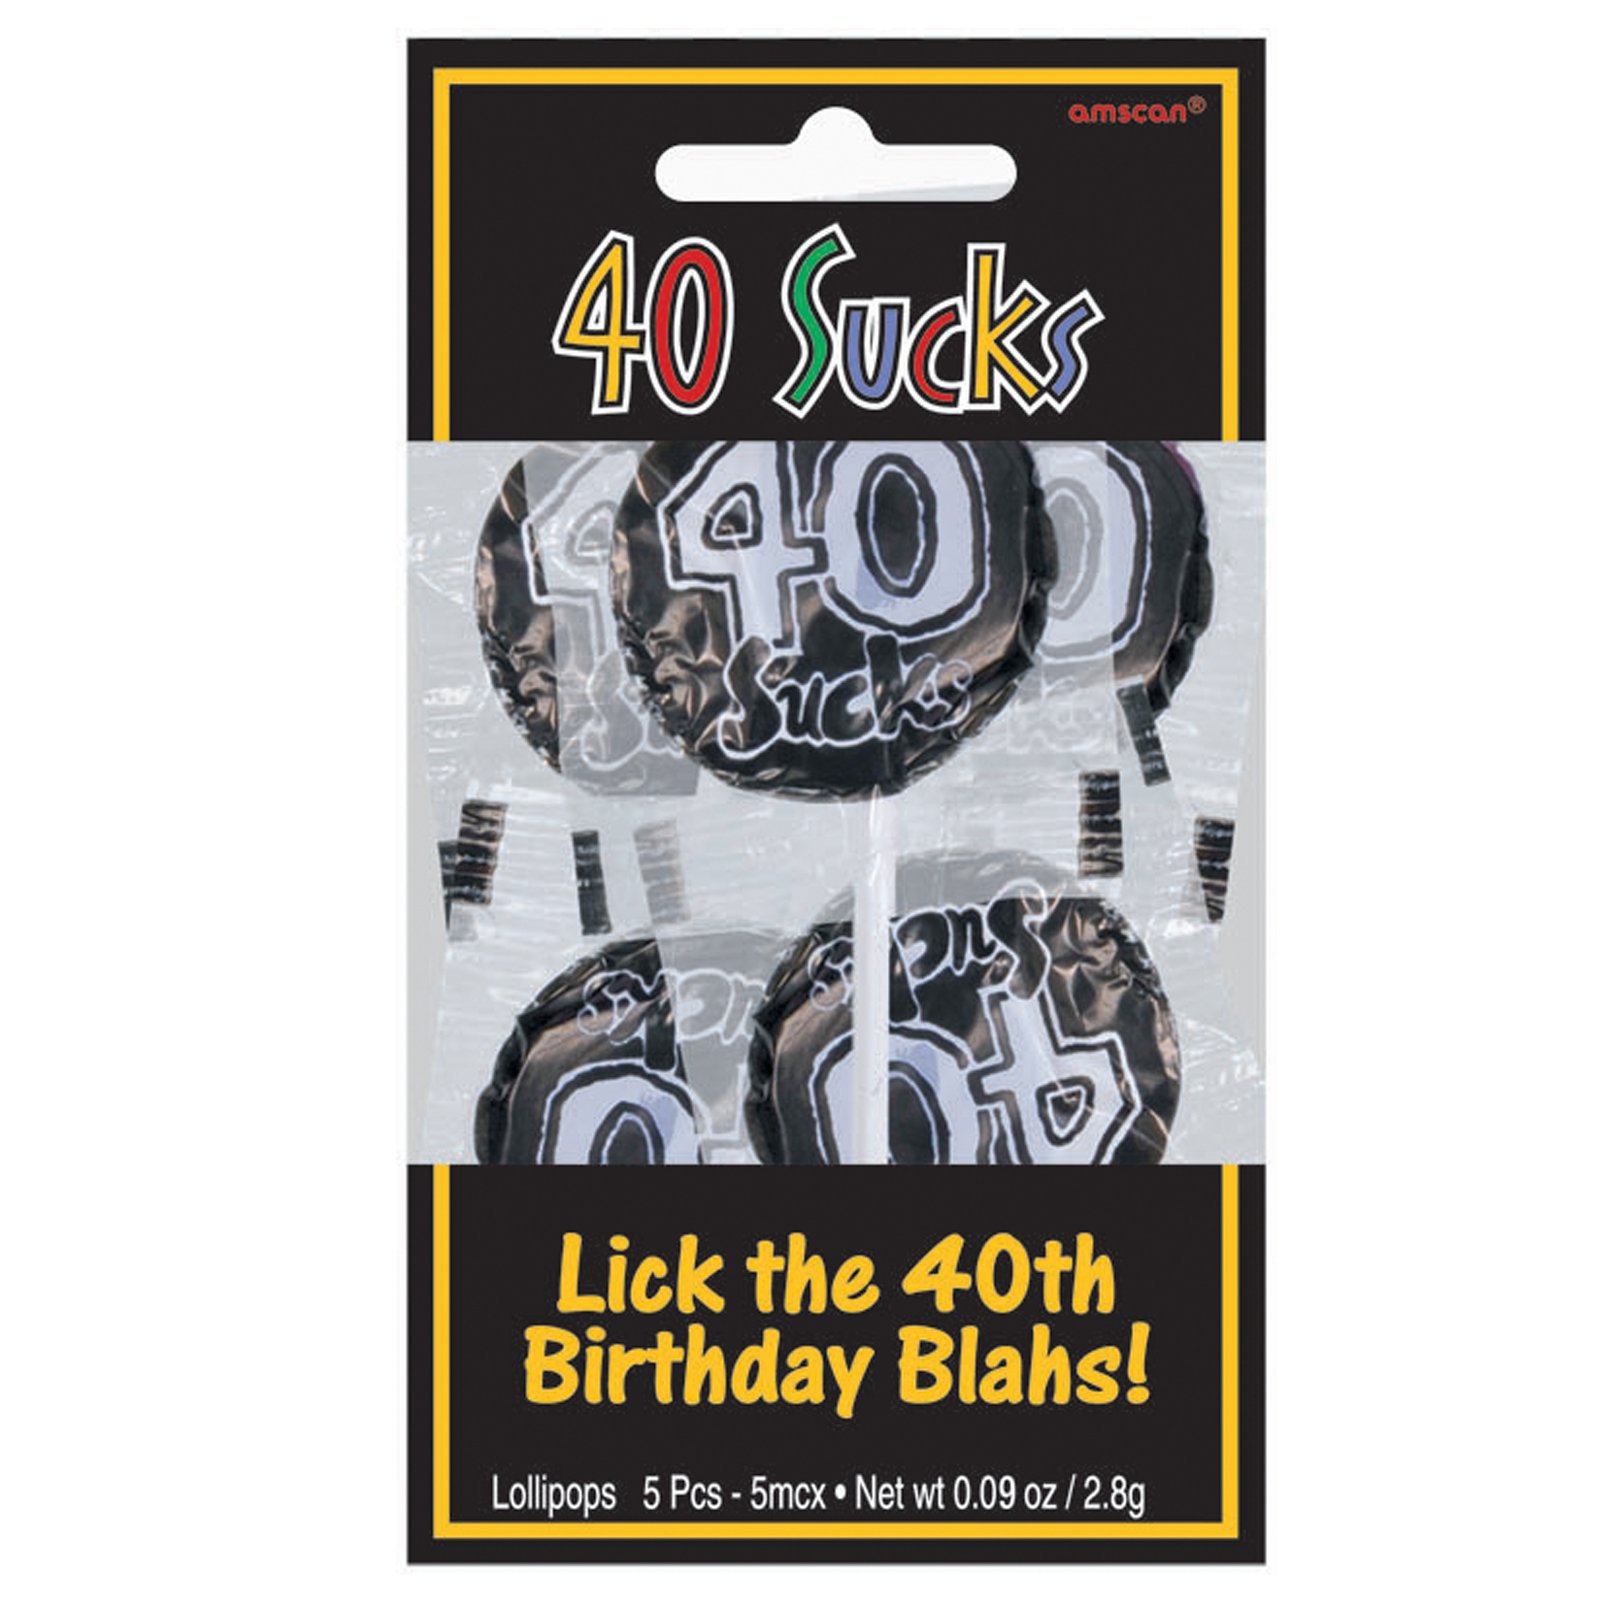 40 Sucks Lollipops (5 count)